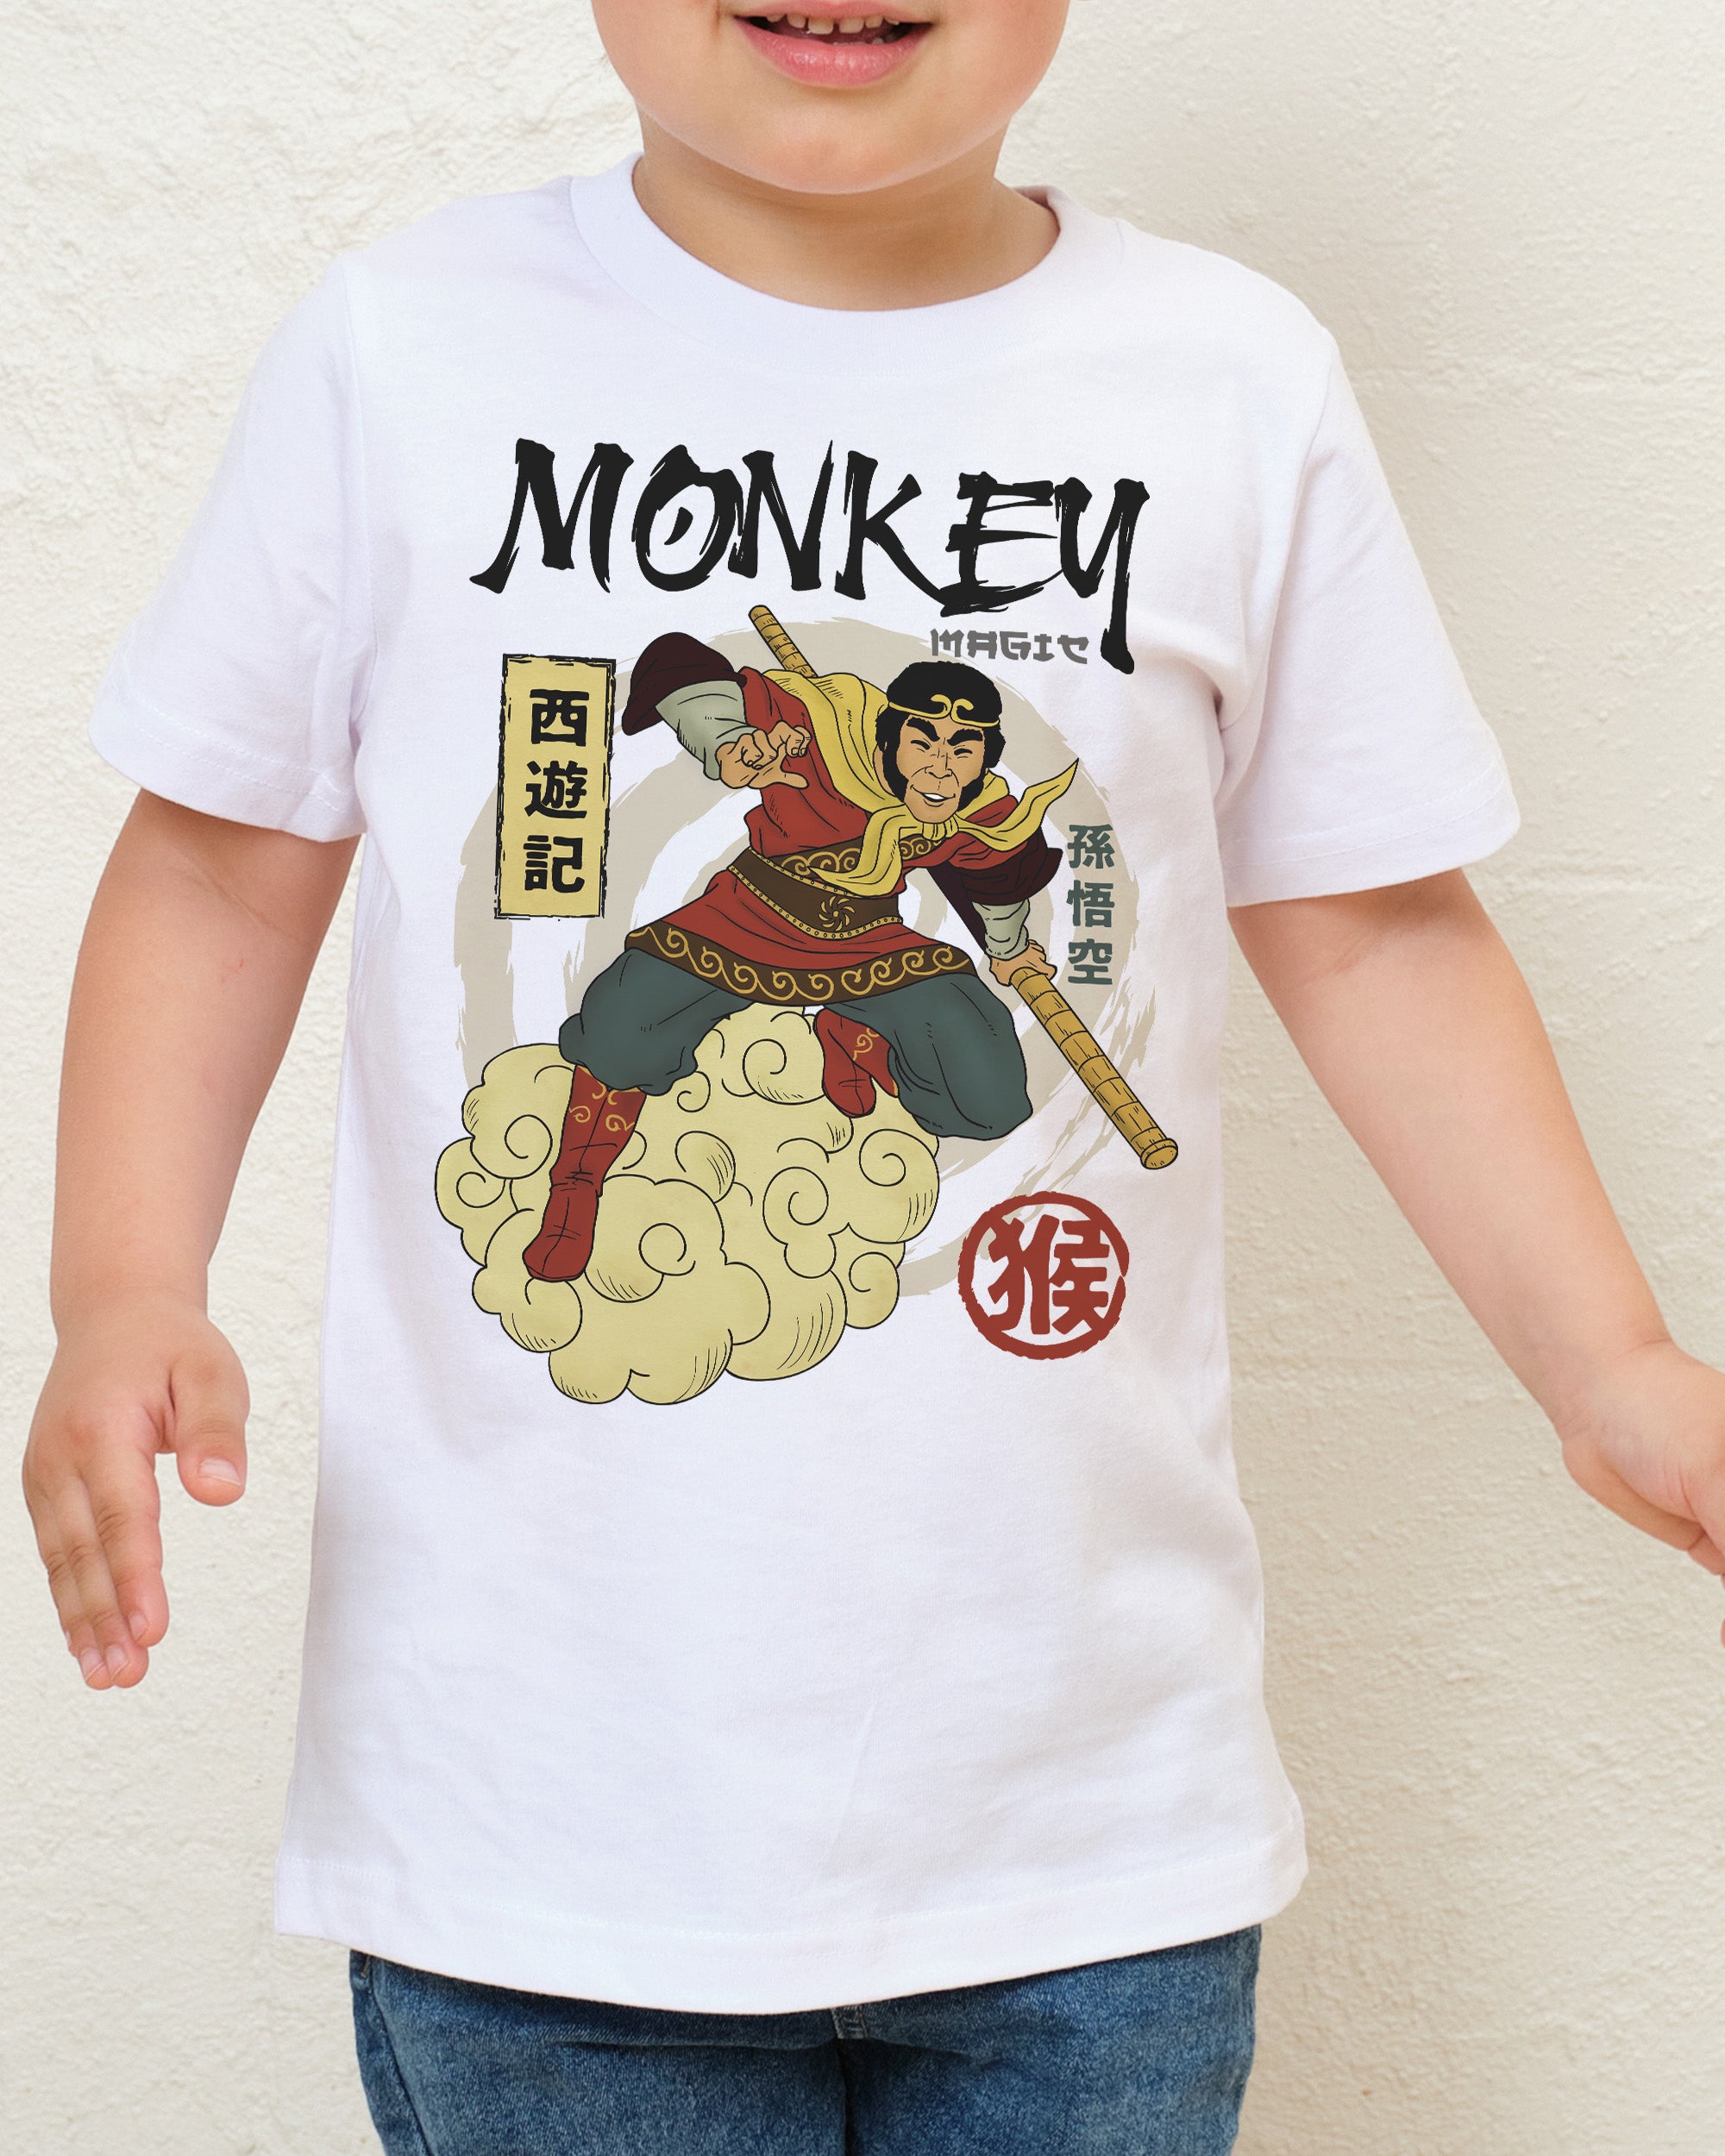 Monkey Magic Kids T-Shirt Australia Online